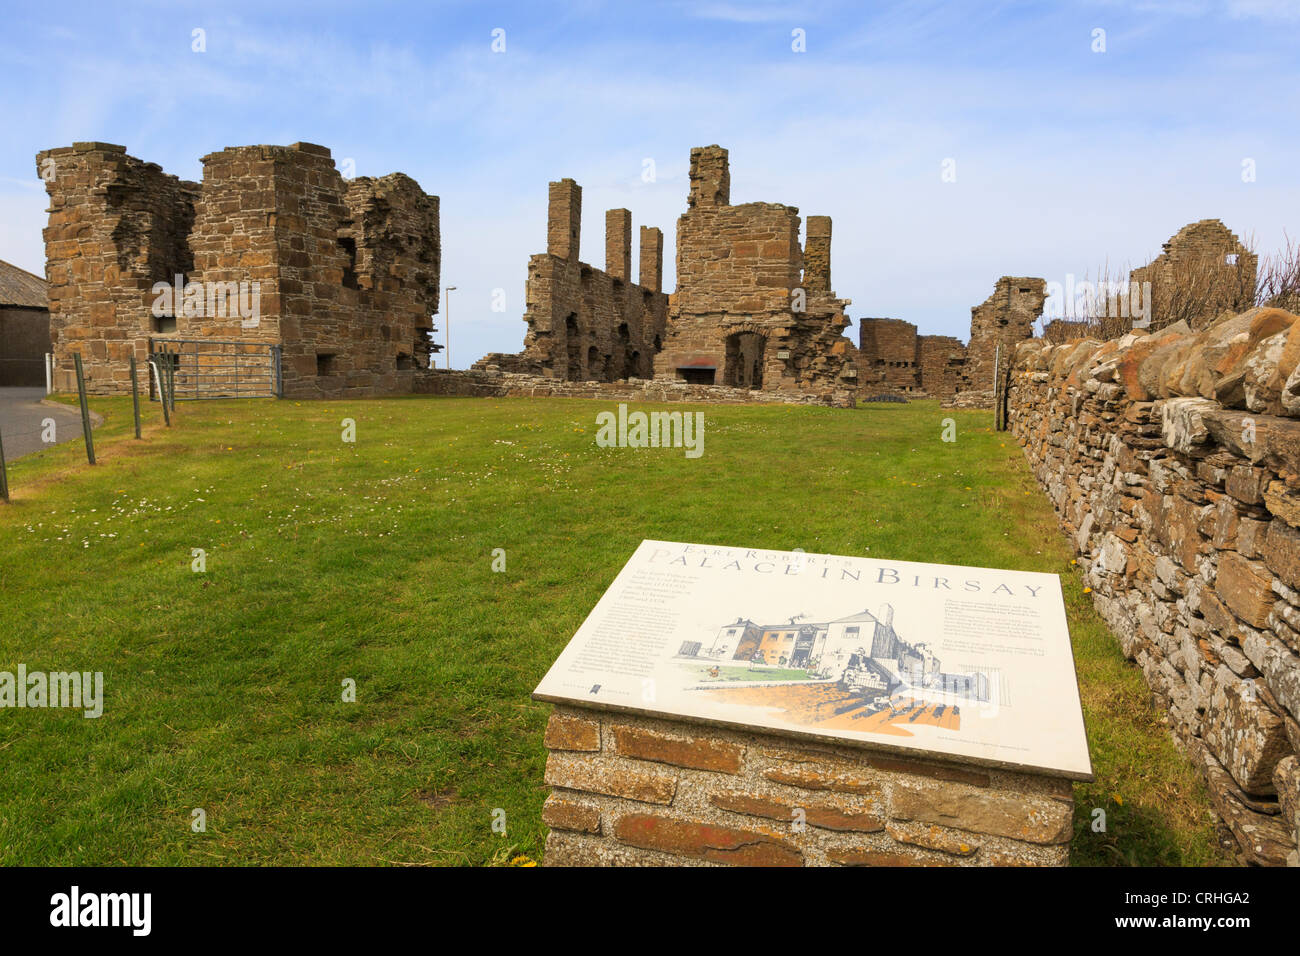 Hinweisschild für die zerstörten Überreste des 16. Jahrhunderts Earl's Palace gebaut von Herrn Robert Stewart. Birsay Orkney Inseln Schottland Großbritannien Stockfoto